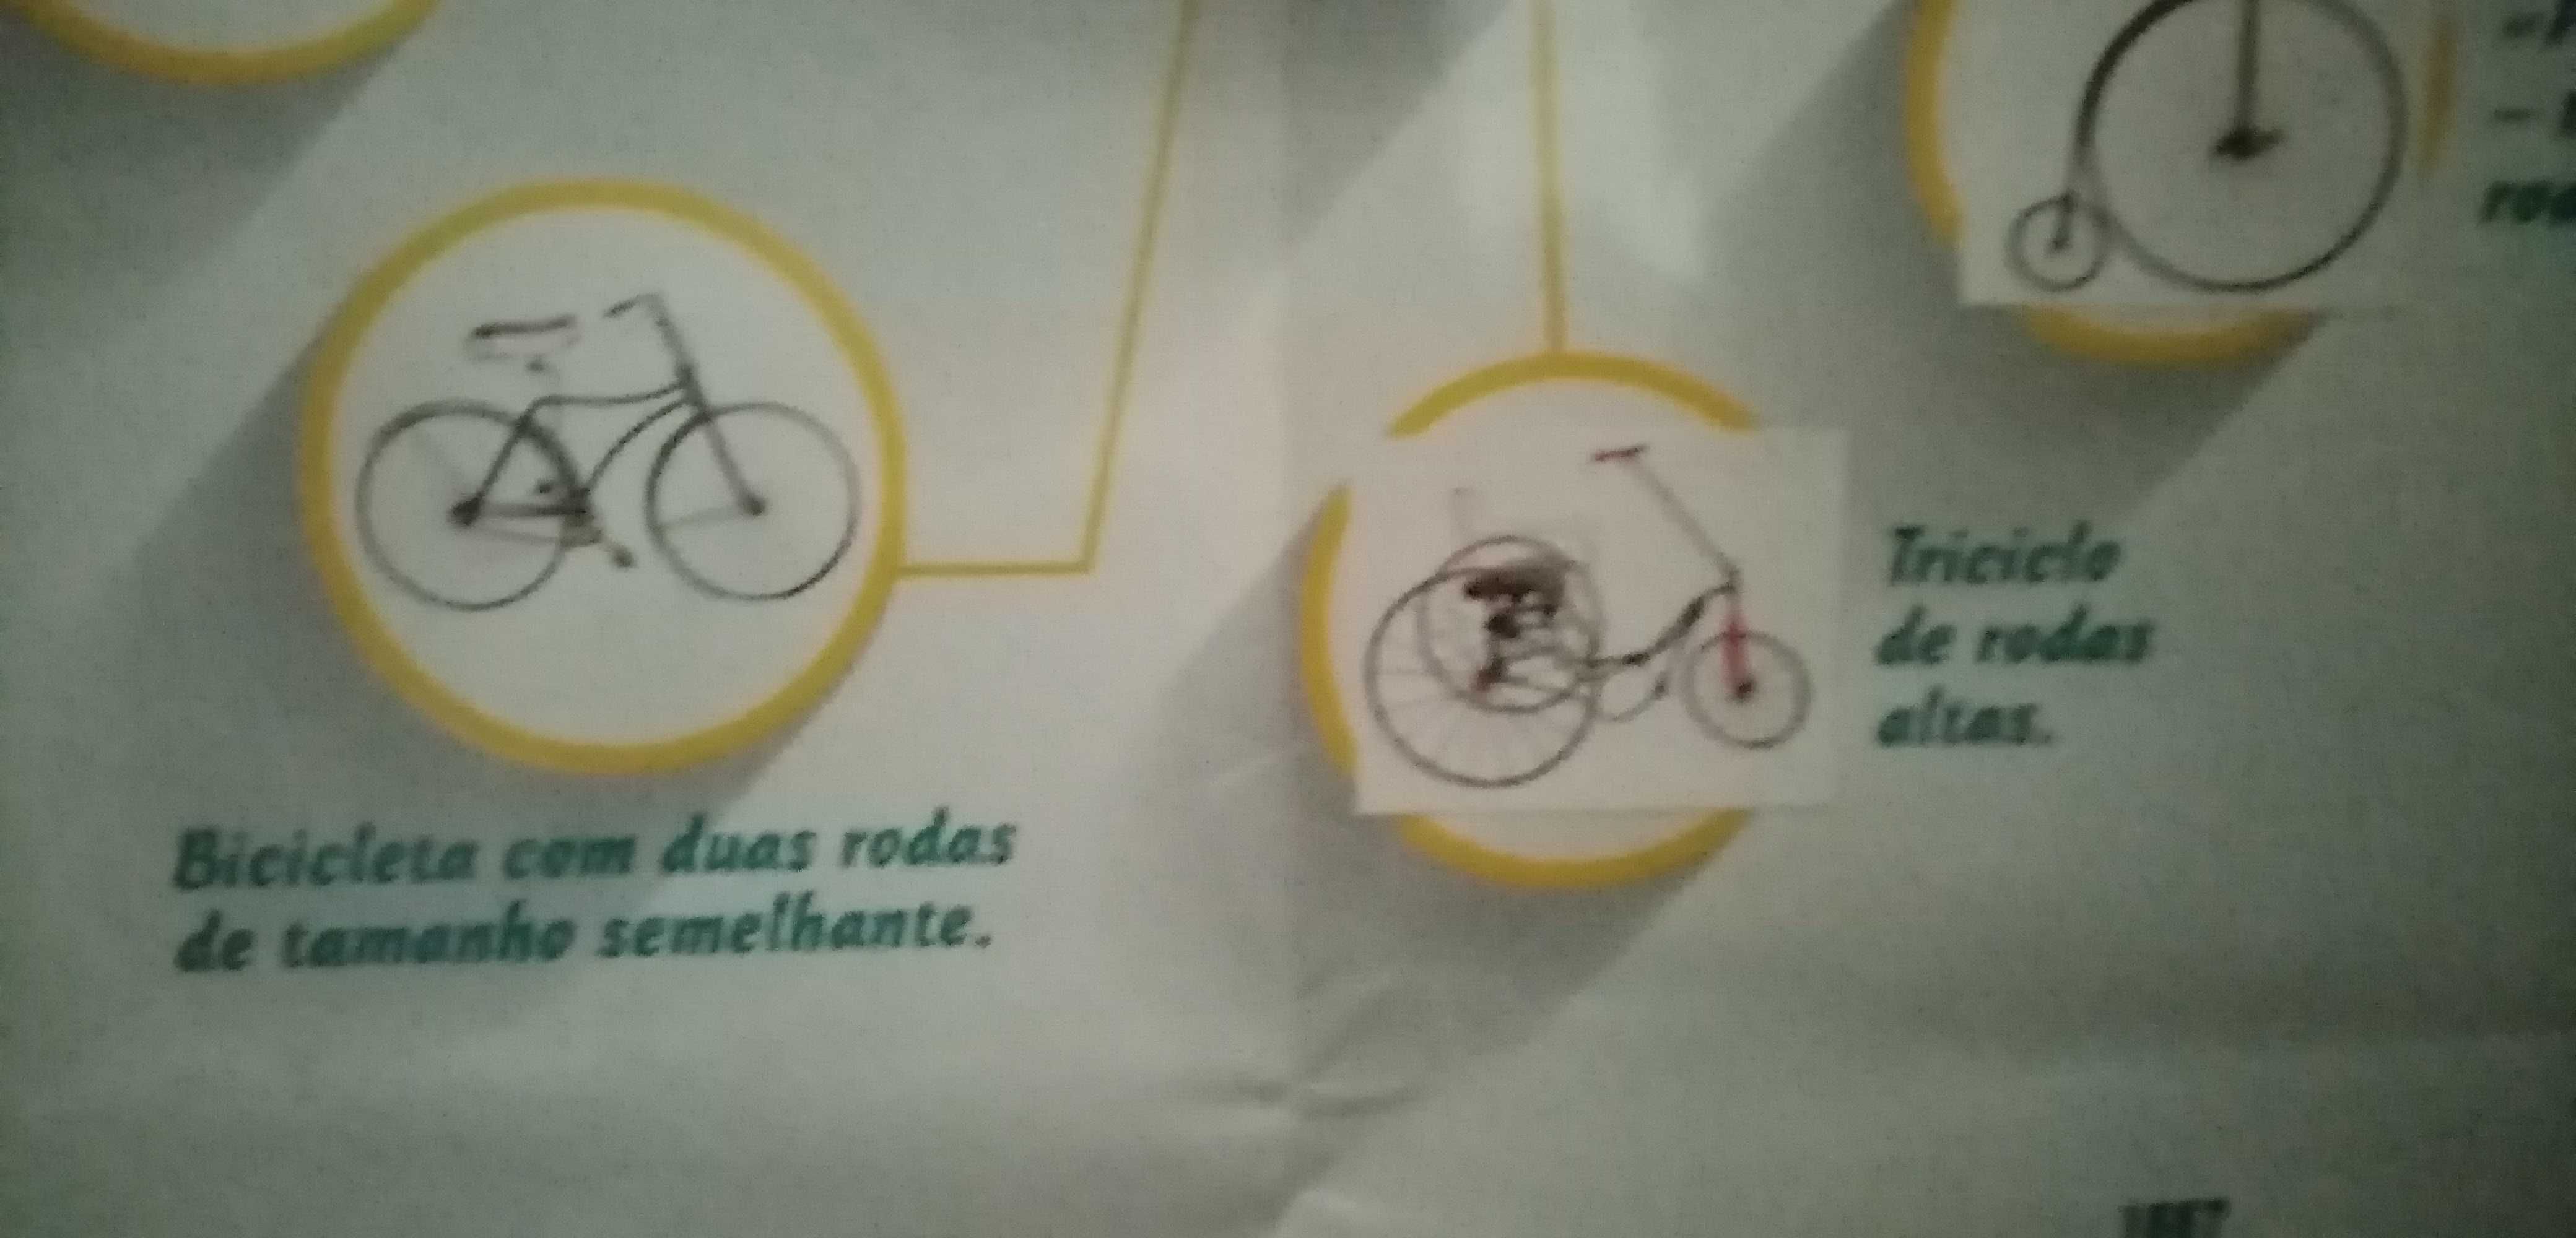 Poster com a evolução da bicicleta